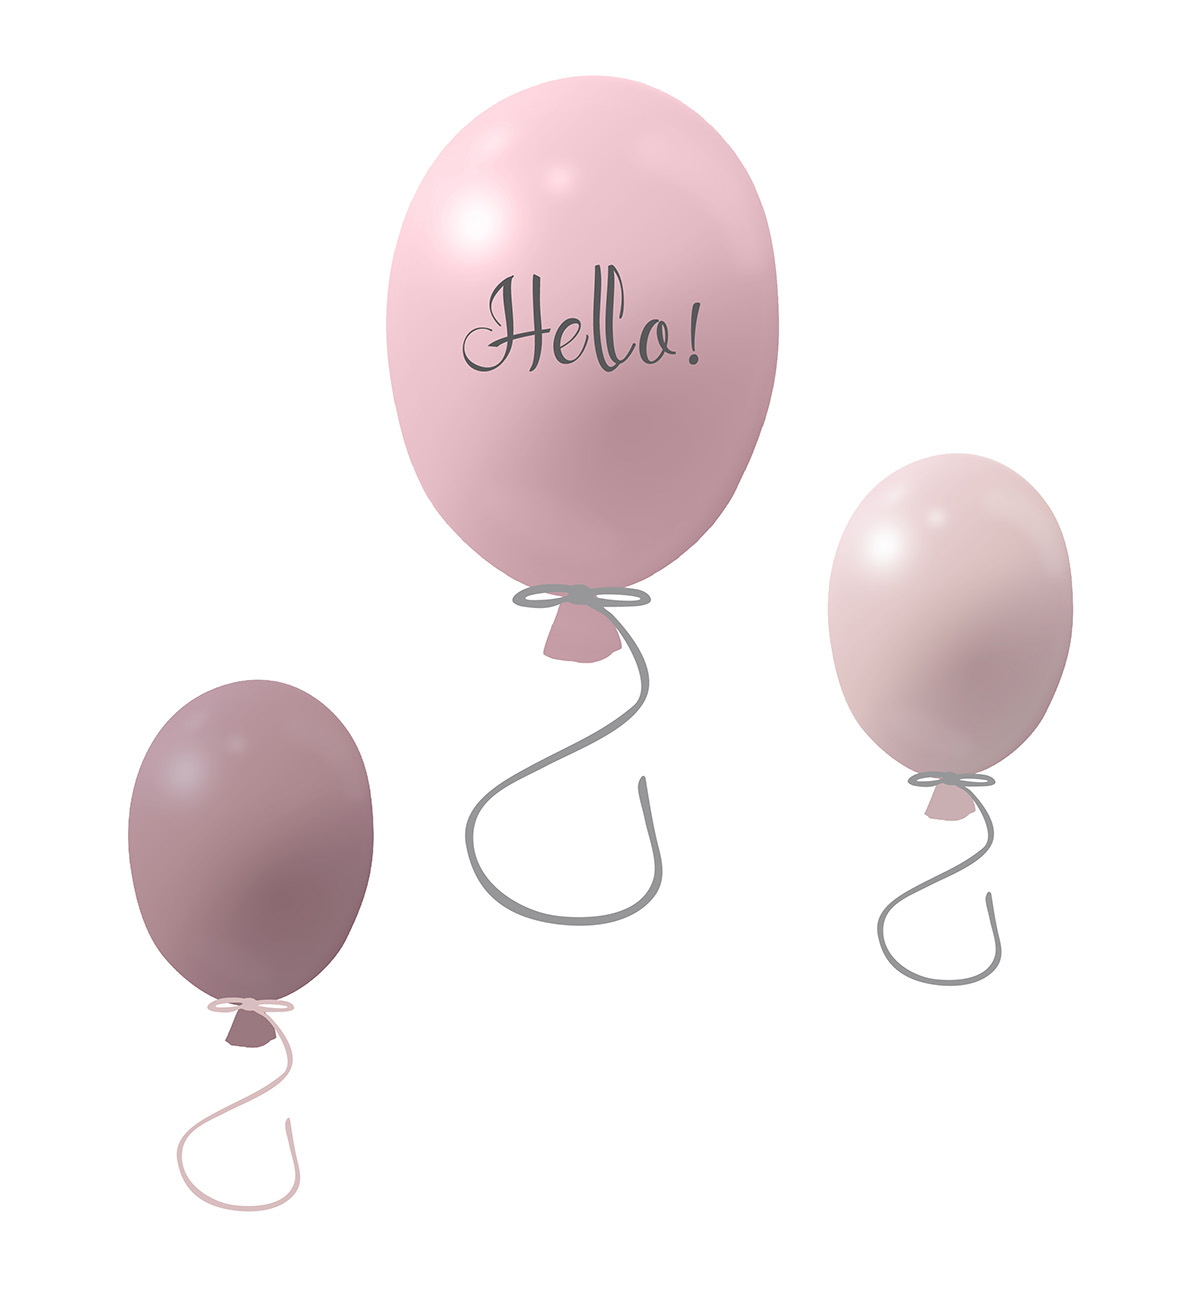 Väggklistermärke partyballonger 3-pack, rose Väggklistermärke bestående av en stor rosa ballong med texten Hello och två mindre ballonger